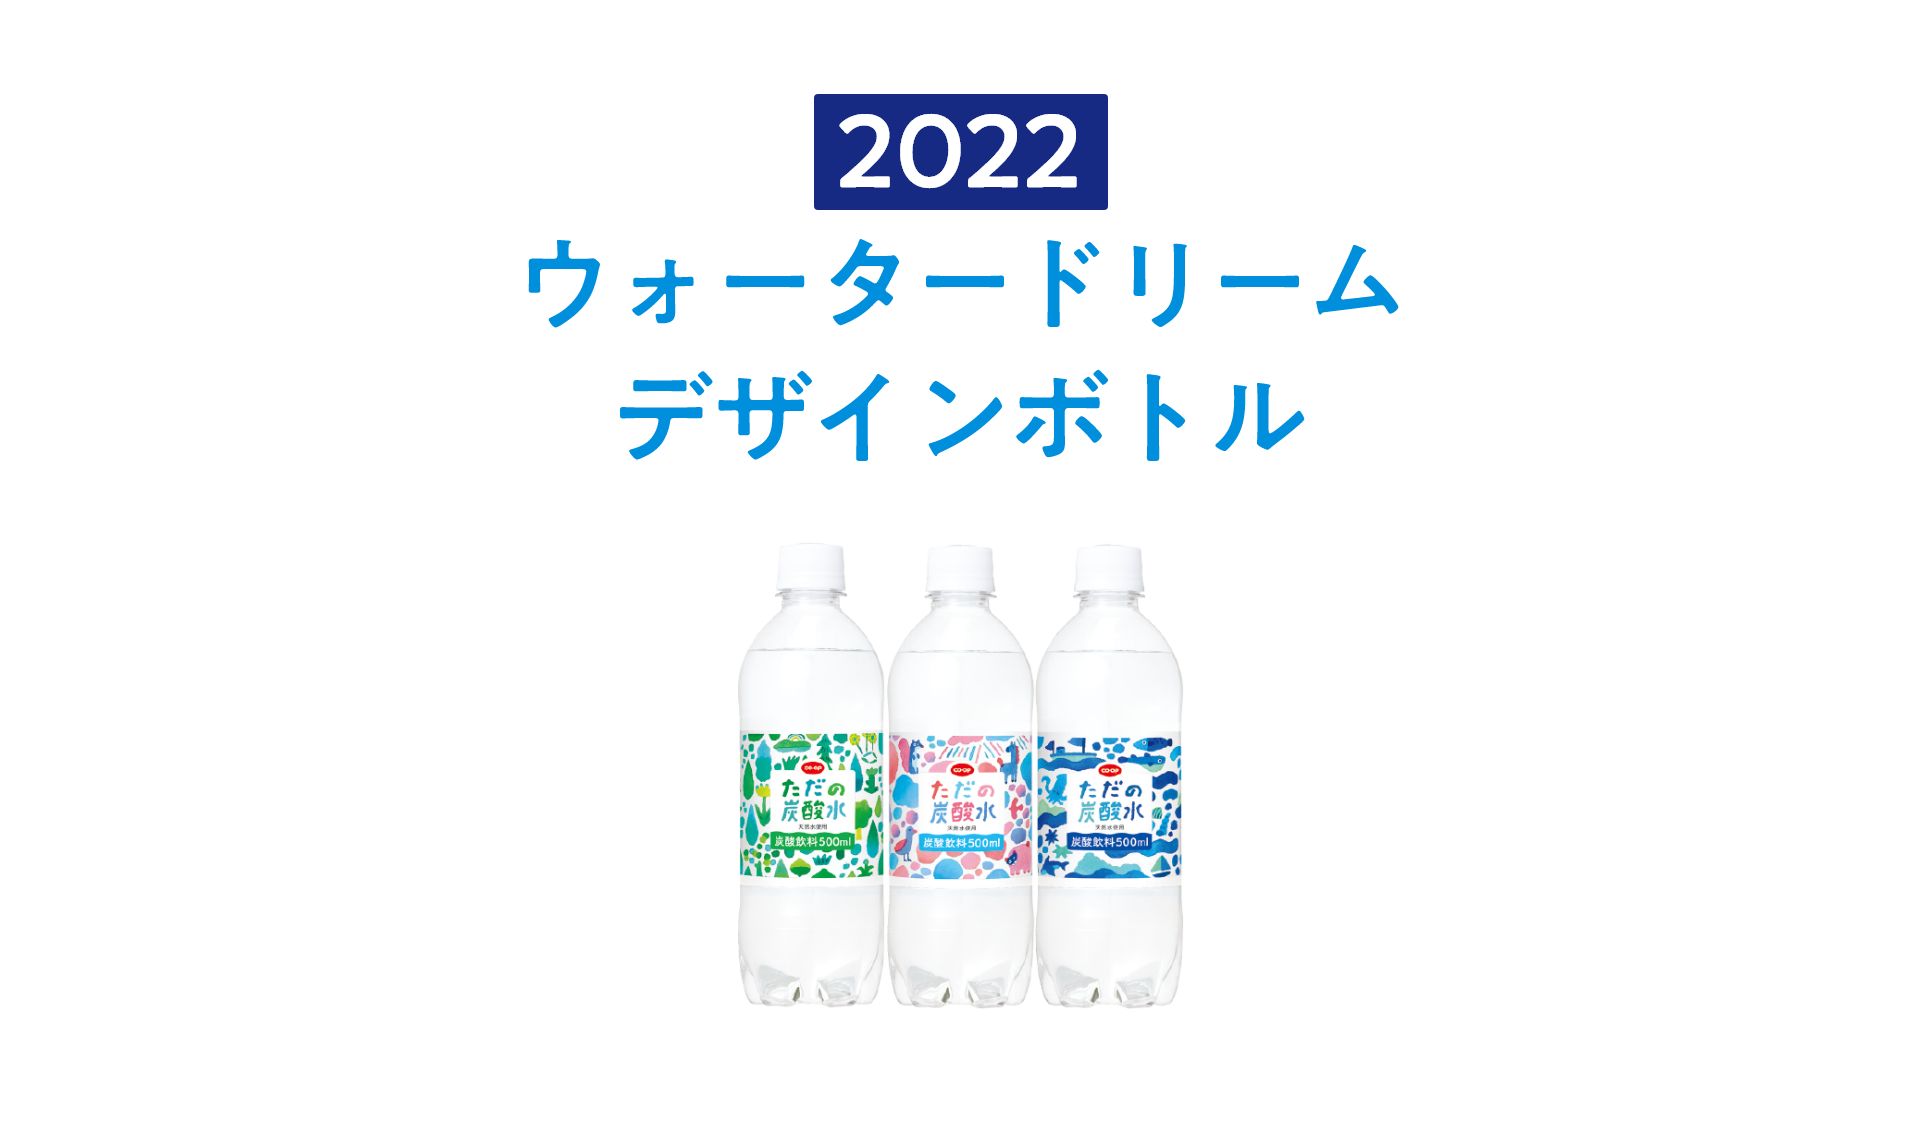 2022 ウォータードリームデザインボトル